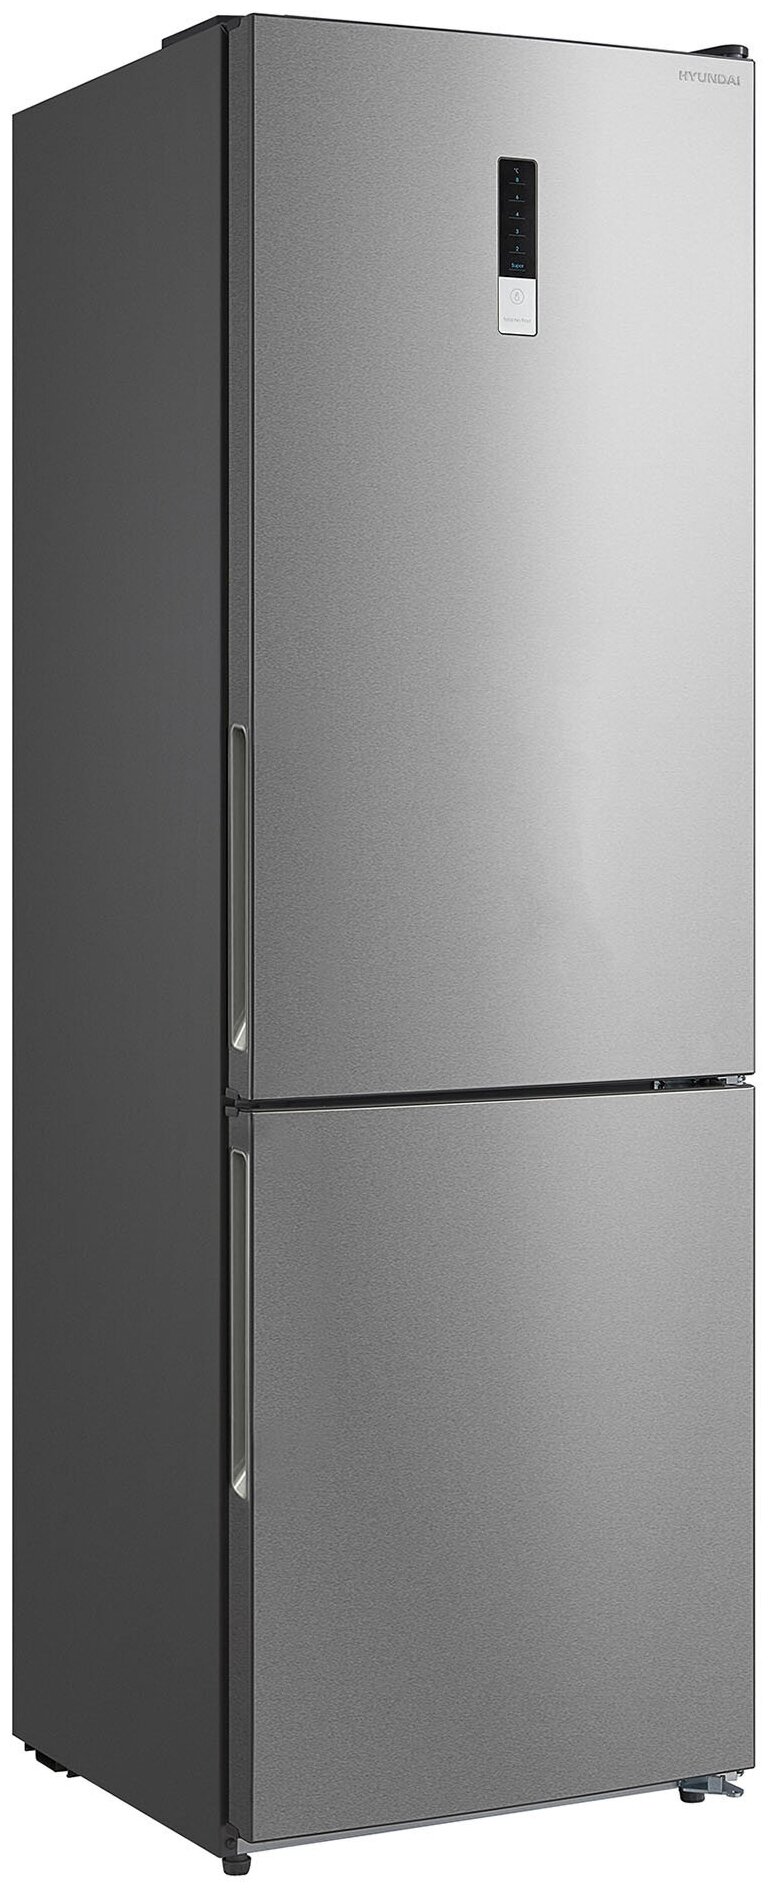 Двухкамерный холодильник Hyundai CC3595FIX